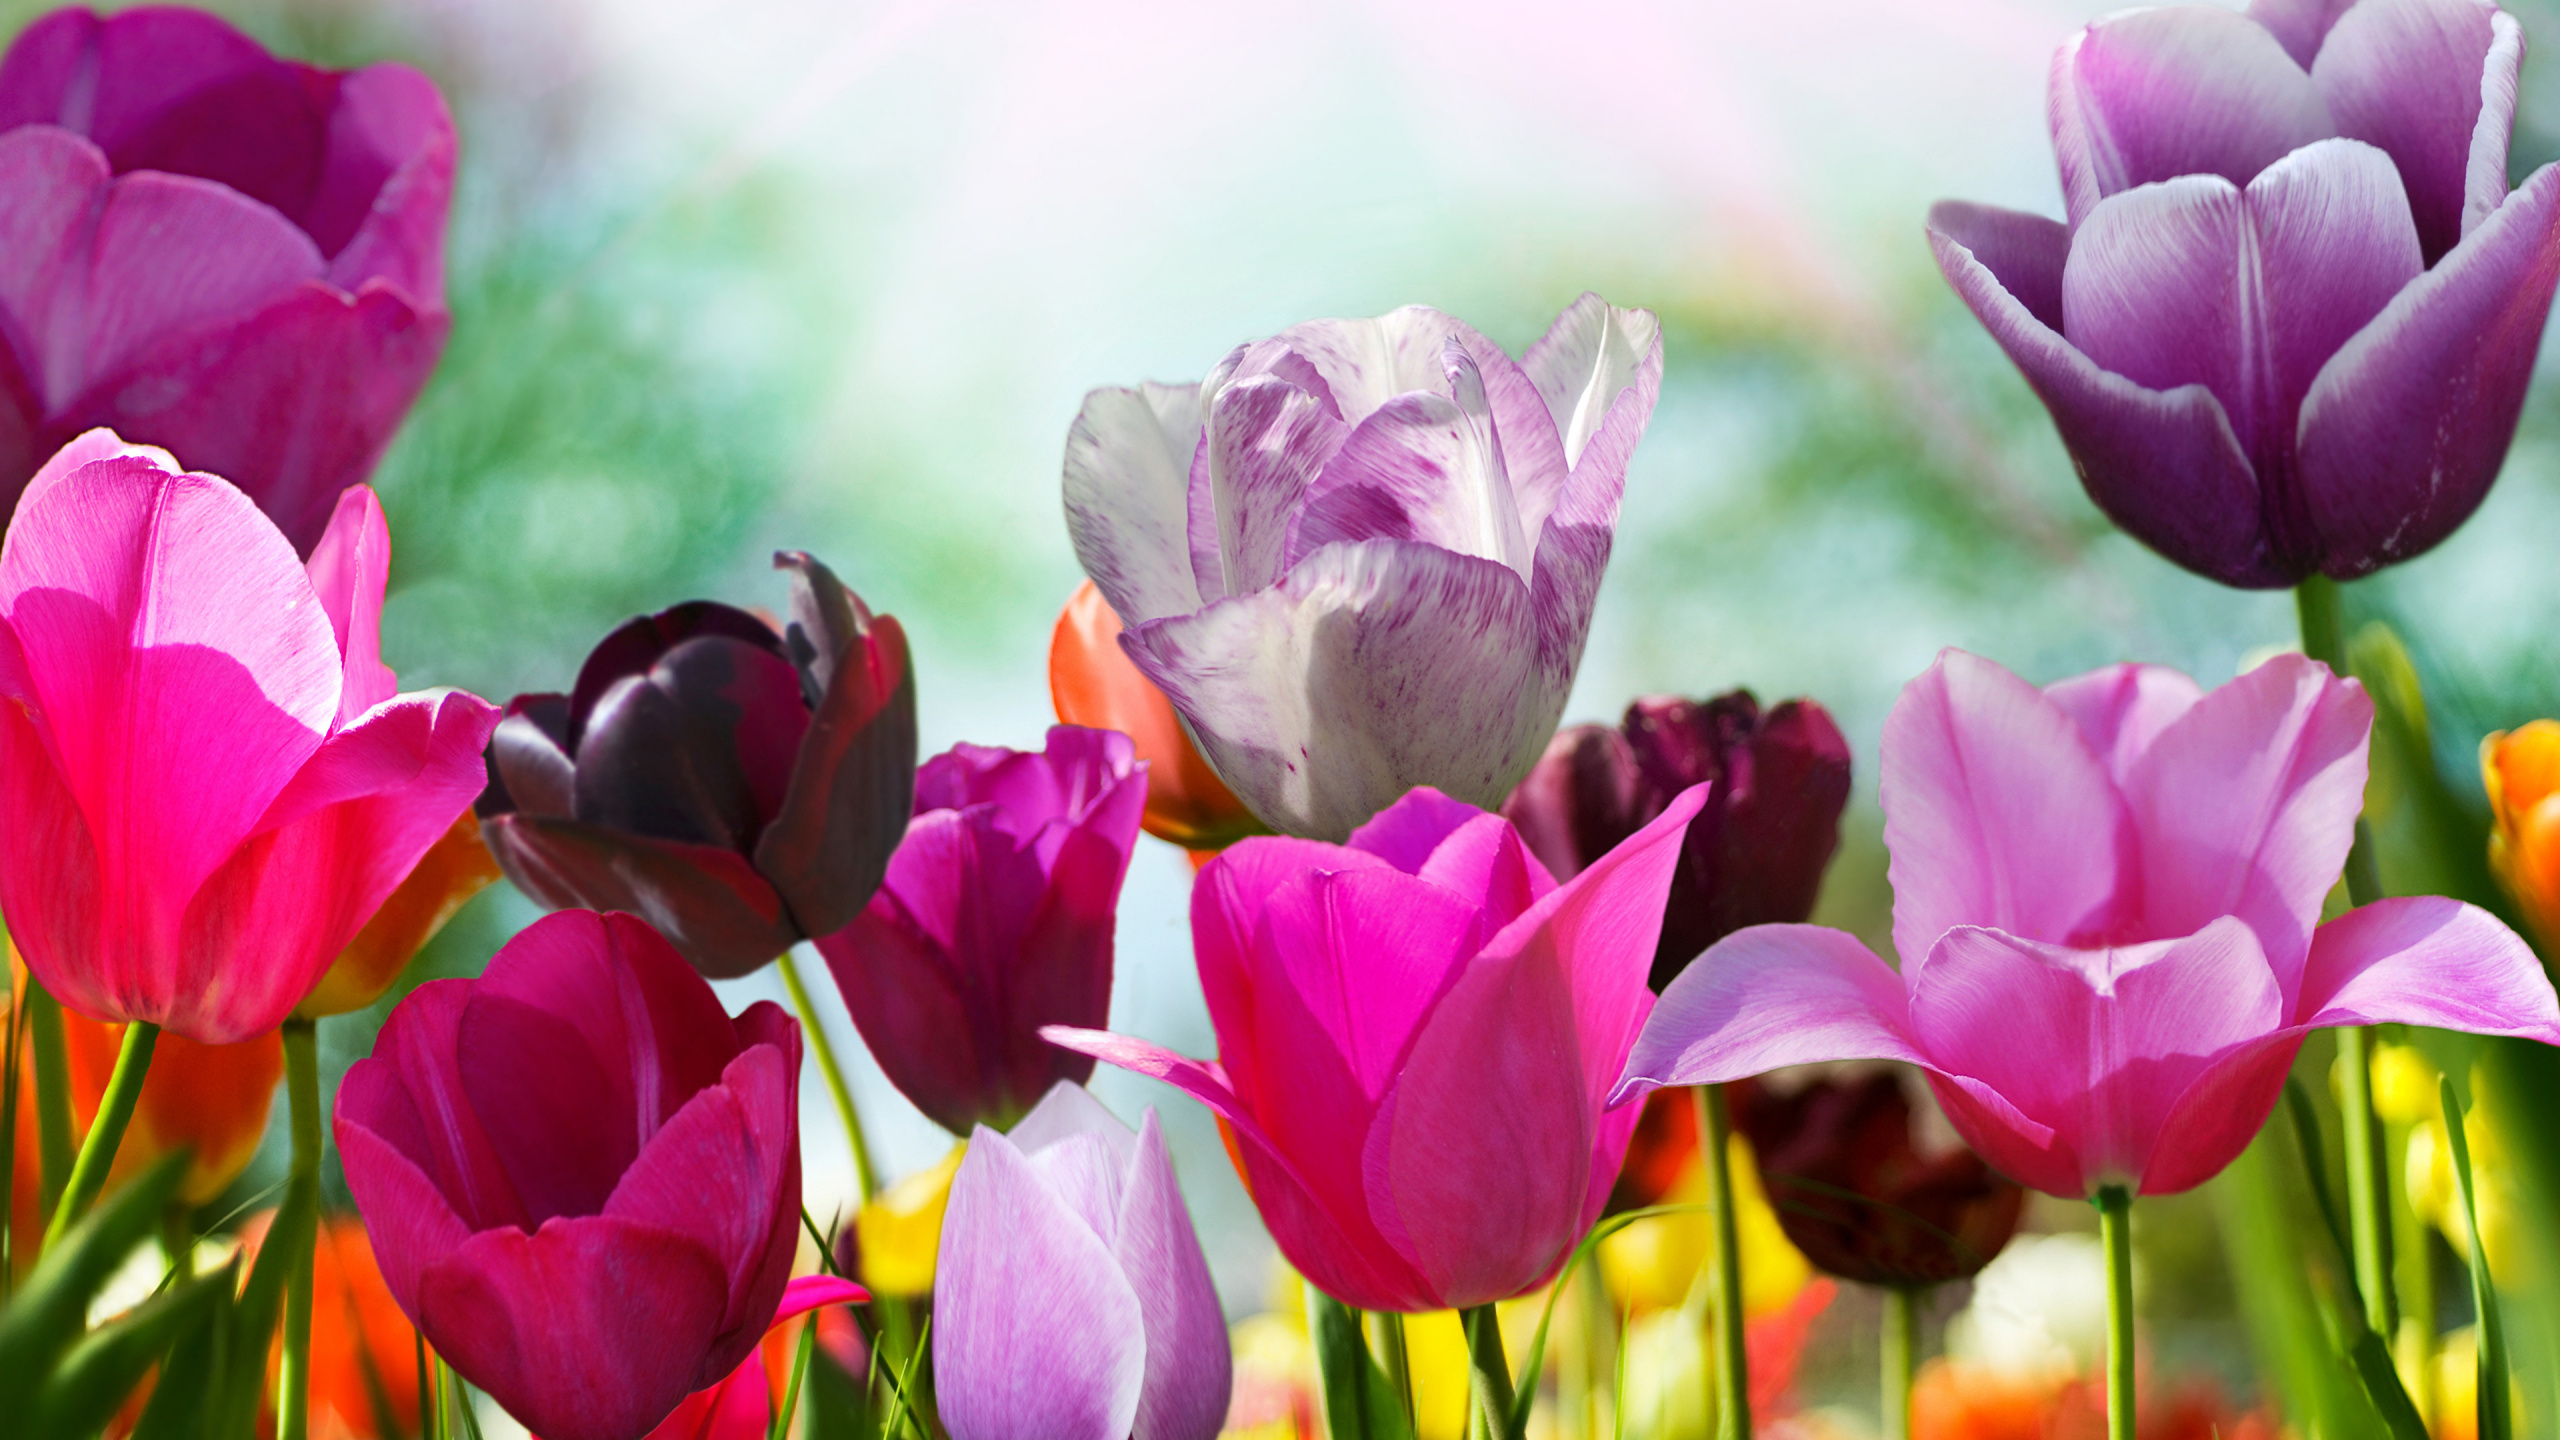 Tulipes Violettes et Roses en Fleurs Pendant la Journée. Wallpaper in 2560x1440 Resolution